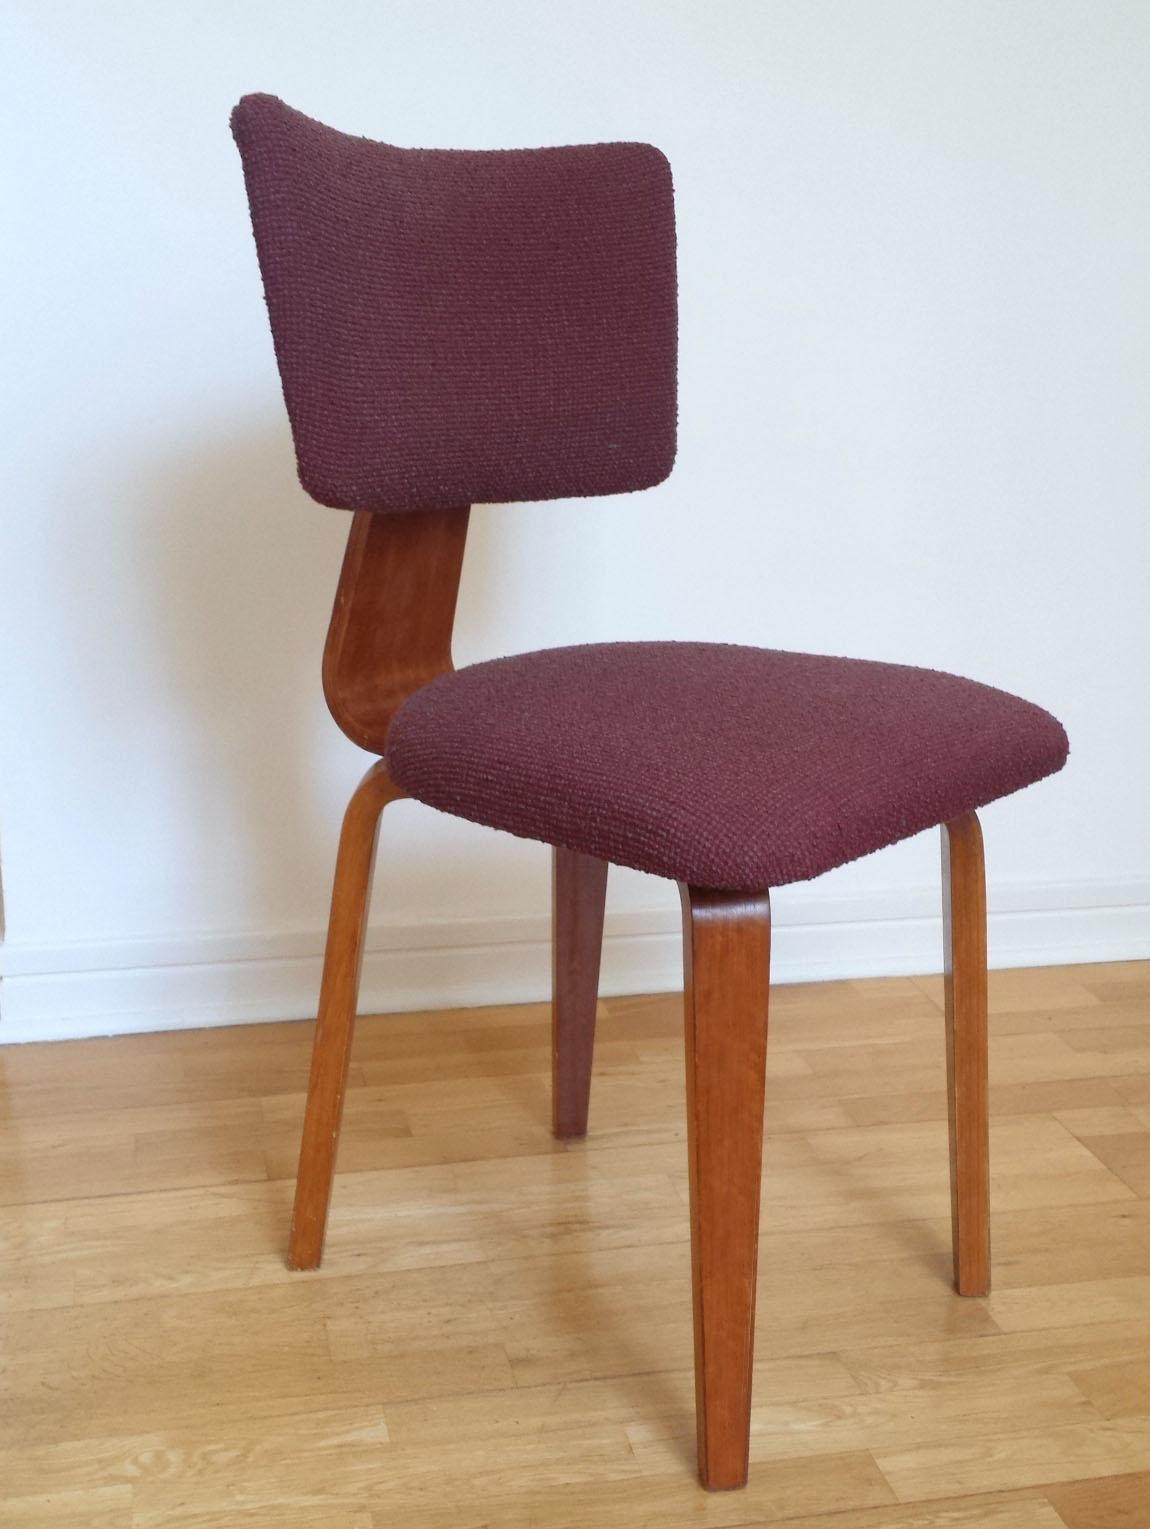 Ein Satz von vier gebogenen Stühlen aus den frühen 1950er Jahren, neu gepolstert mit dunklem auberginefarbenem Boucle-Wollstoff, entworfen von Cor Alons & J.C.Jansen 1949, hergestellt von C.den Boer's Meubelfabrieken NV / Gouda.
  